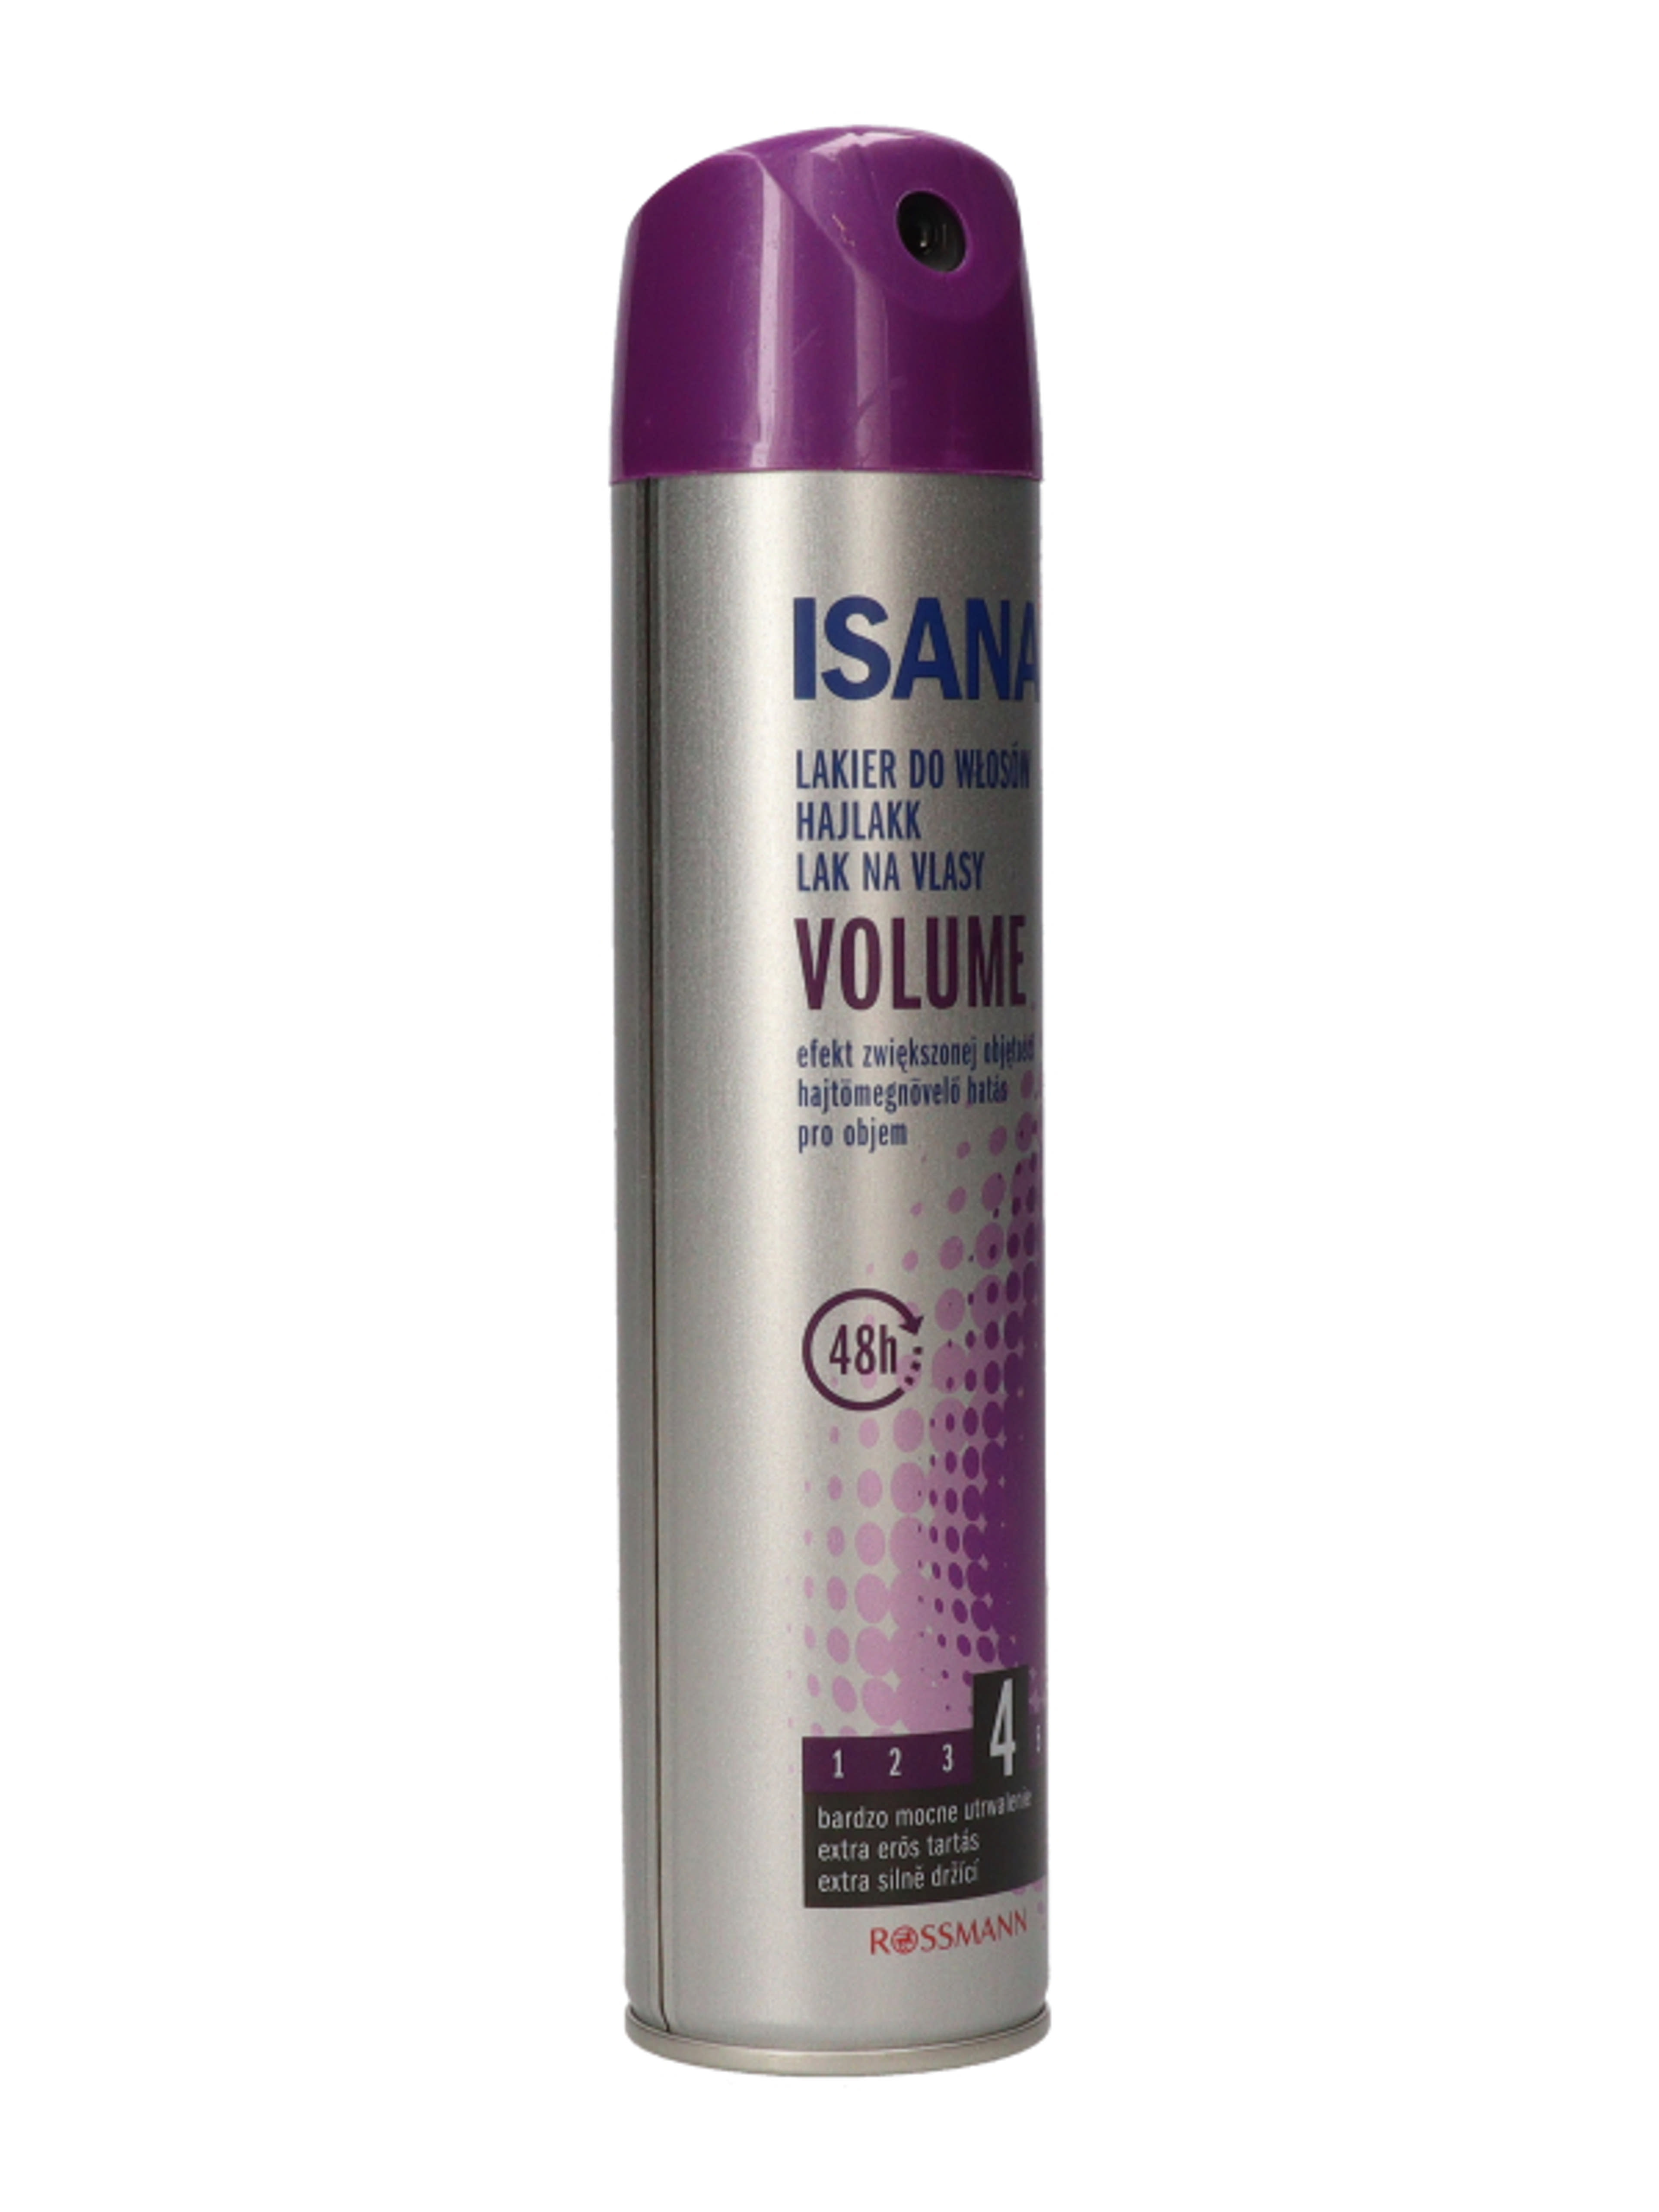 Isana Hair Volume Up hajlakk - 250 ml-6